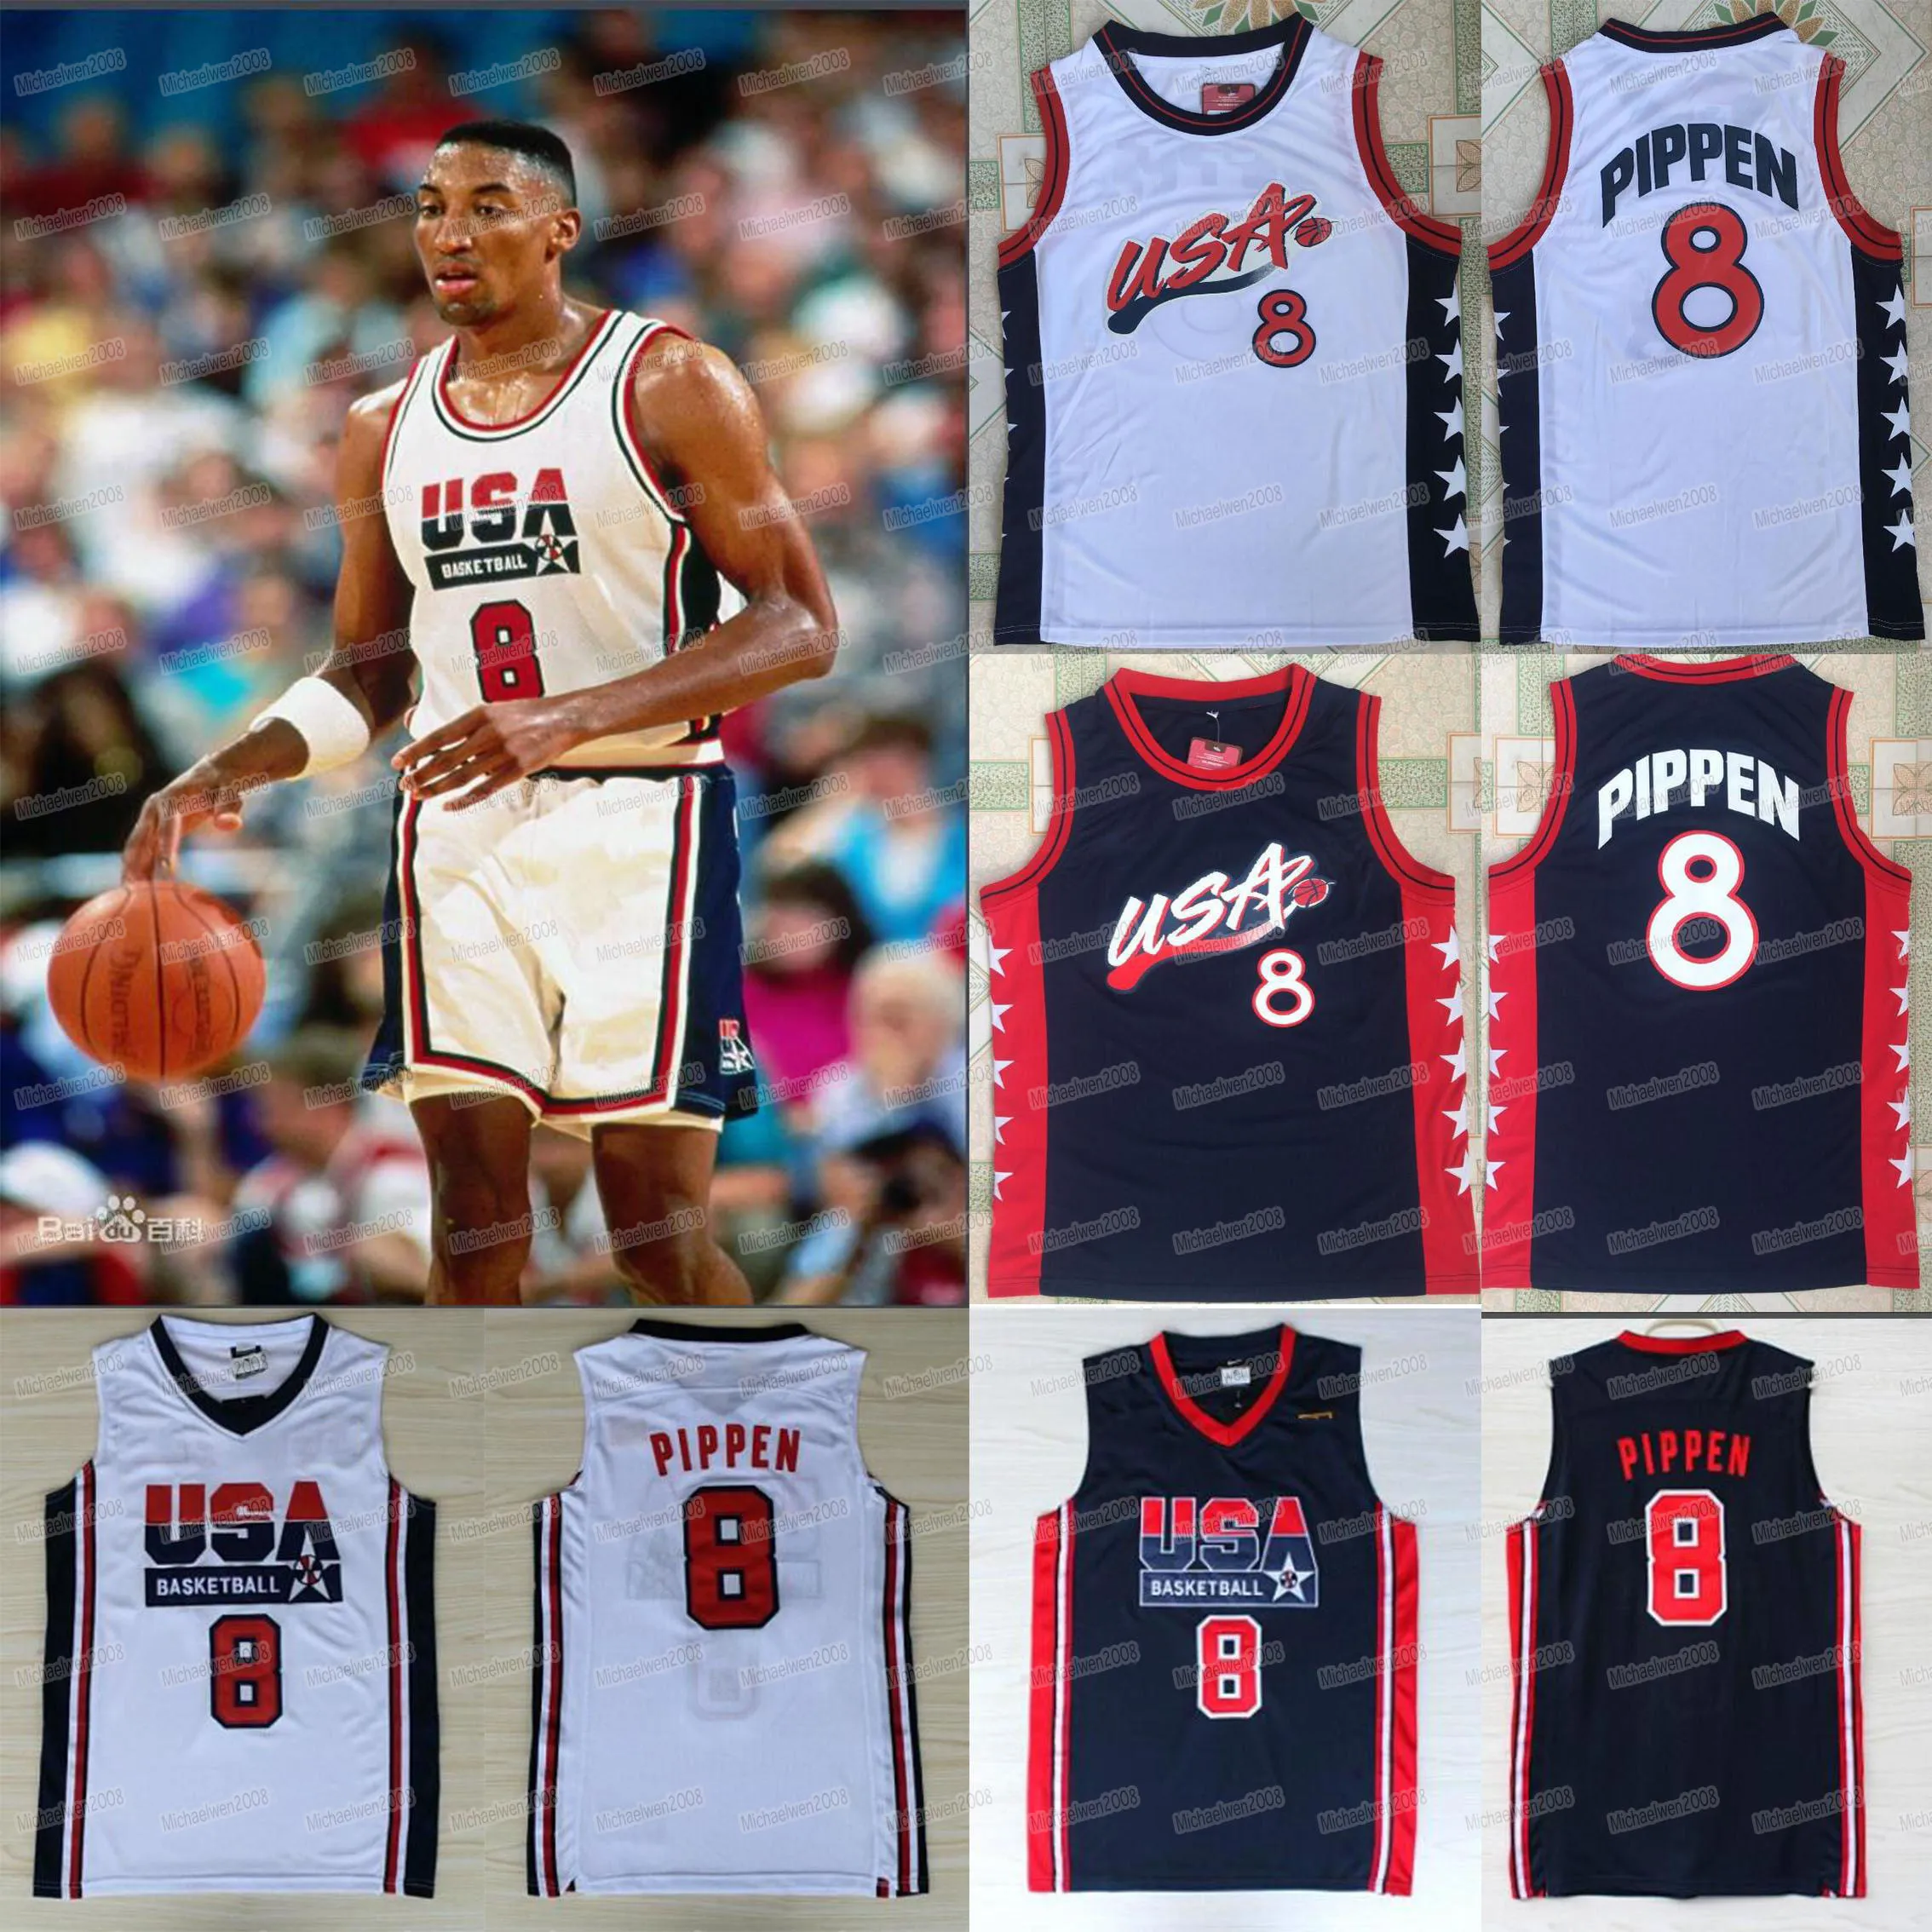 8 Scottie Pippen 1992 1996 팀 미국 게임 드림 팀 농구 유니폼 농구 저지 크기 S-XXL